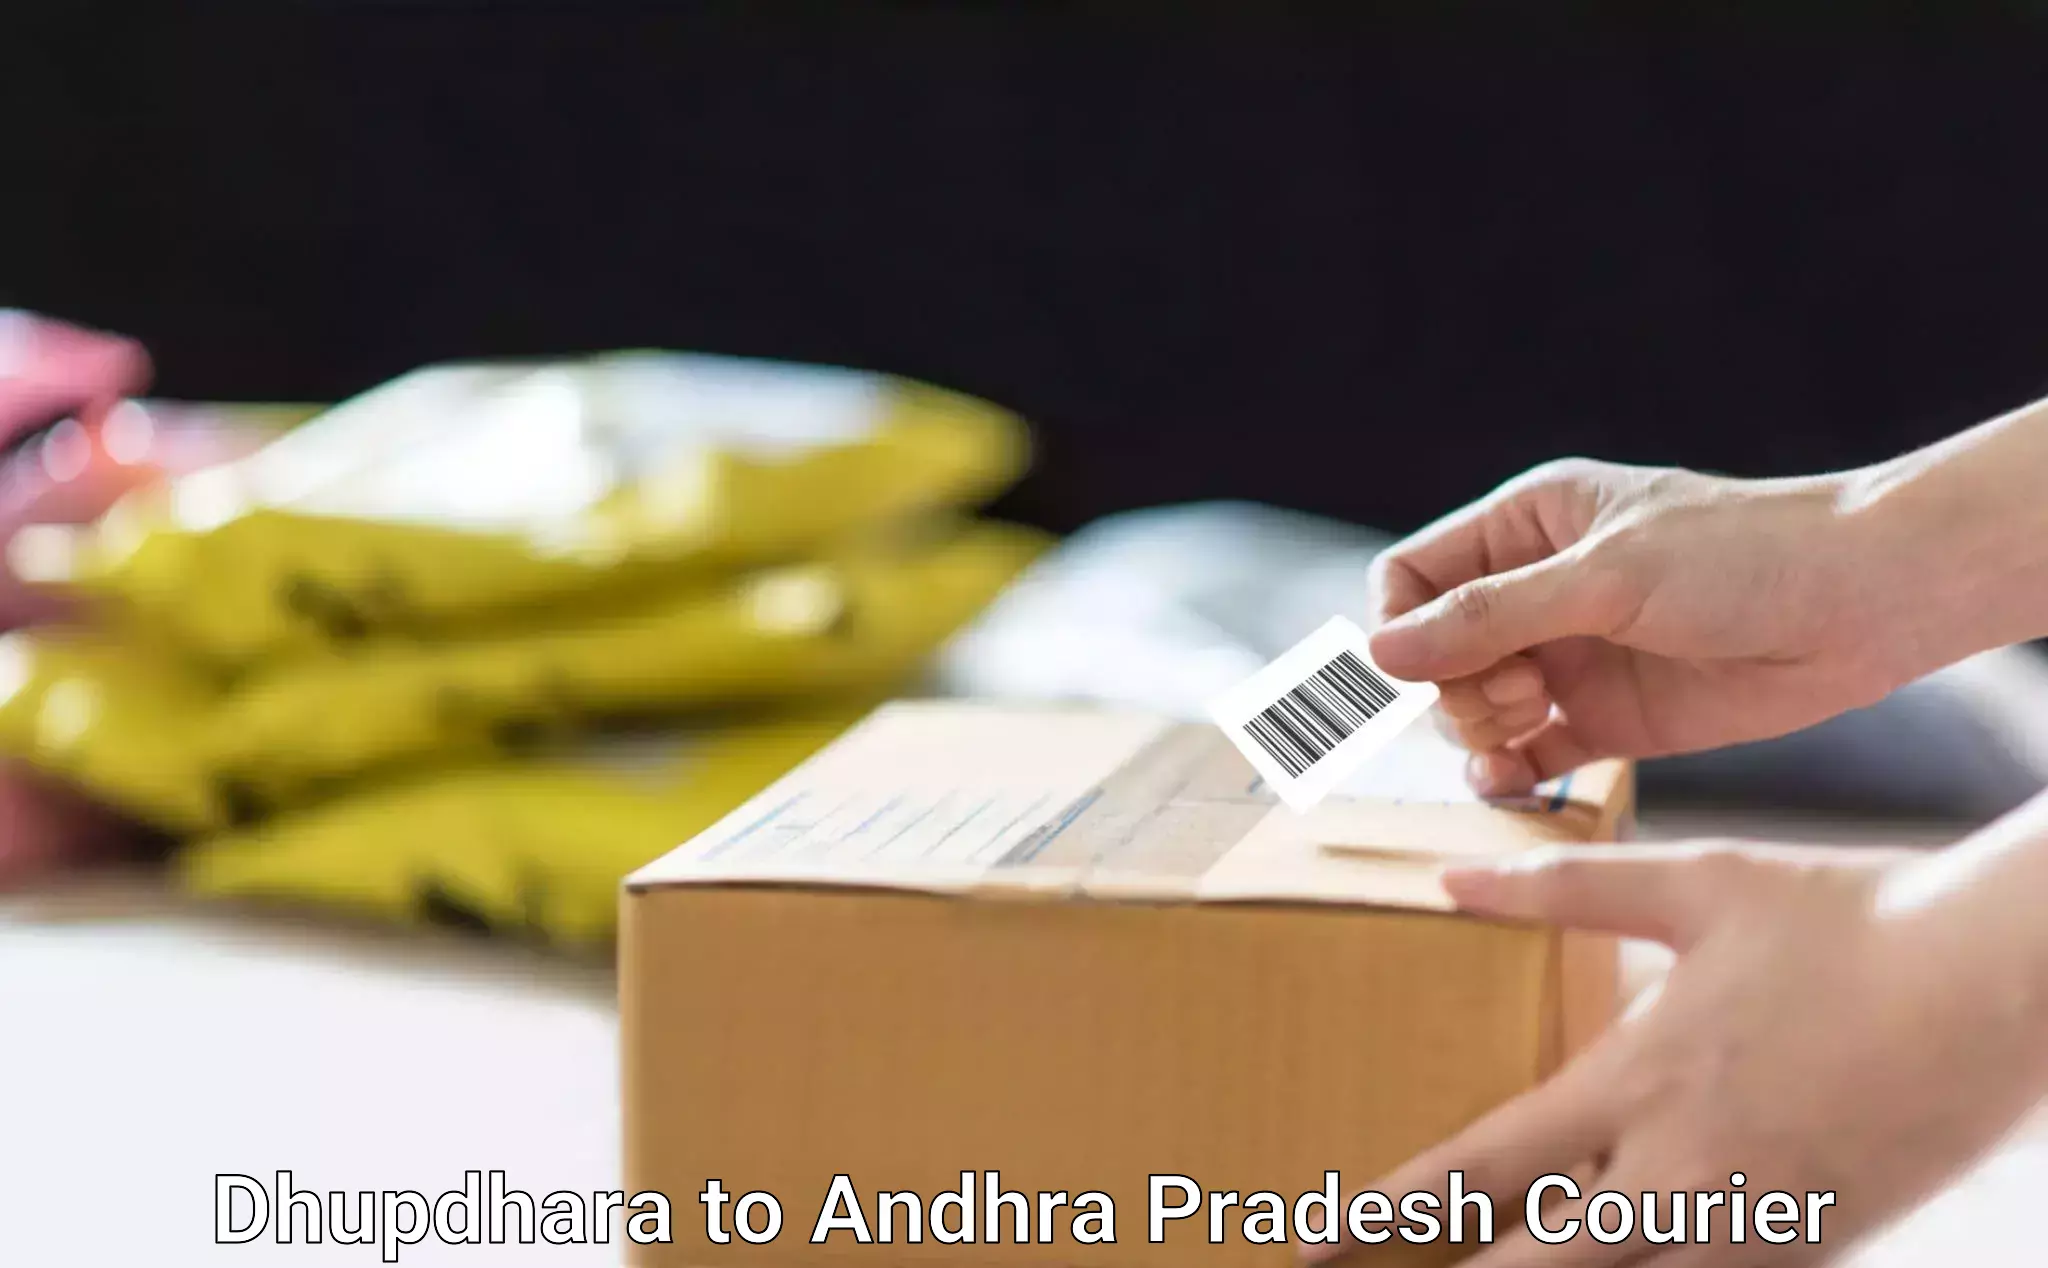 Versatile courier offerings Dhupdhara to Andhra Pradesh